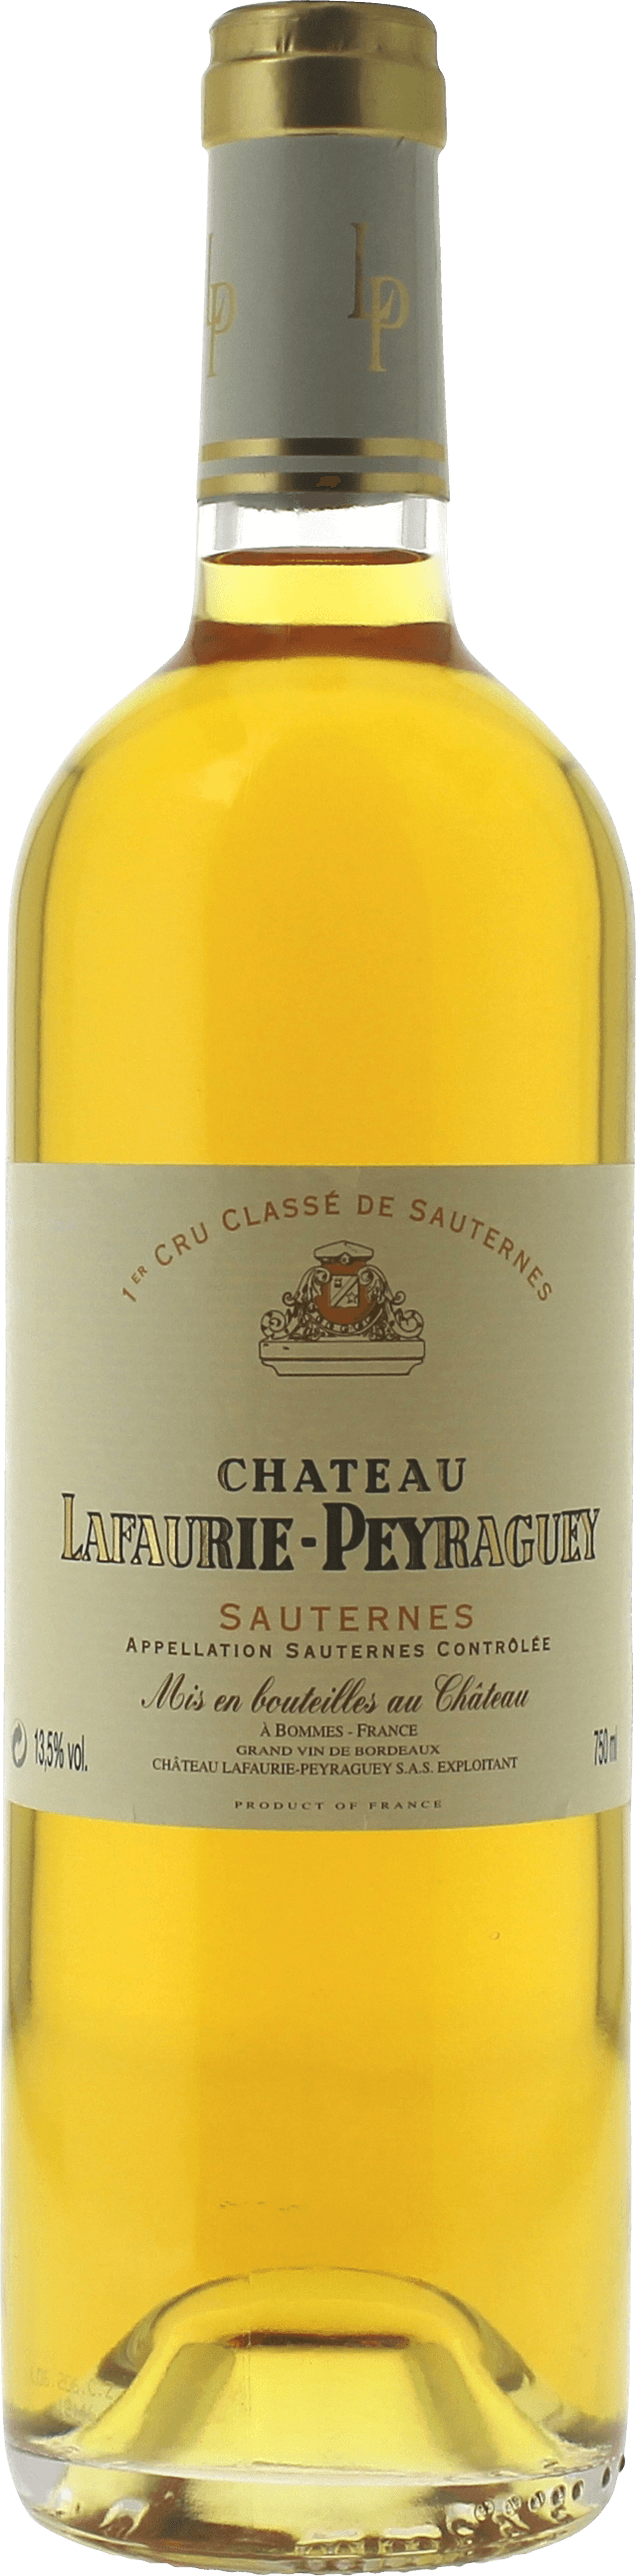 Lafaurie peyraguey 2003  Sauternes, Bordeaux blanc